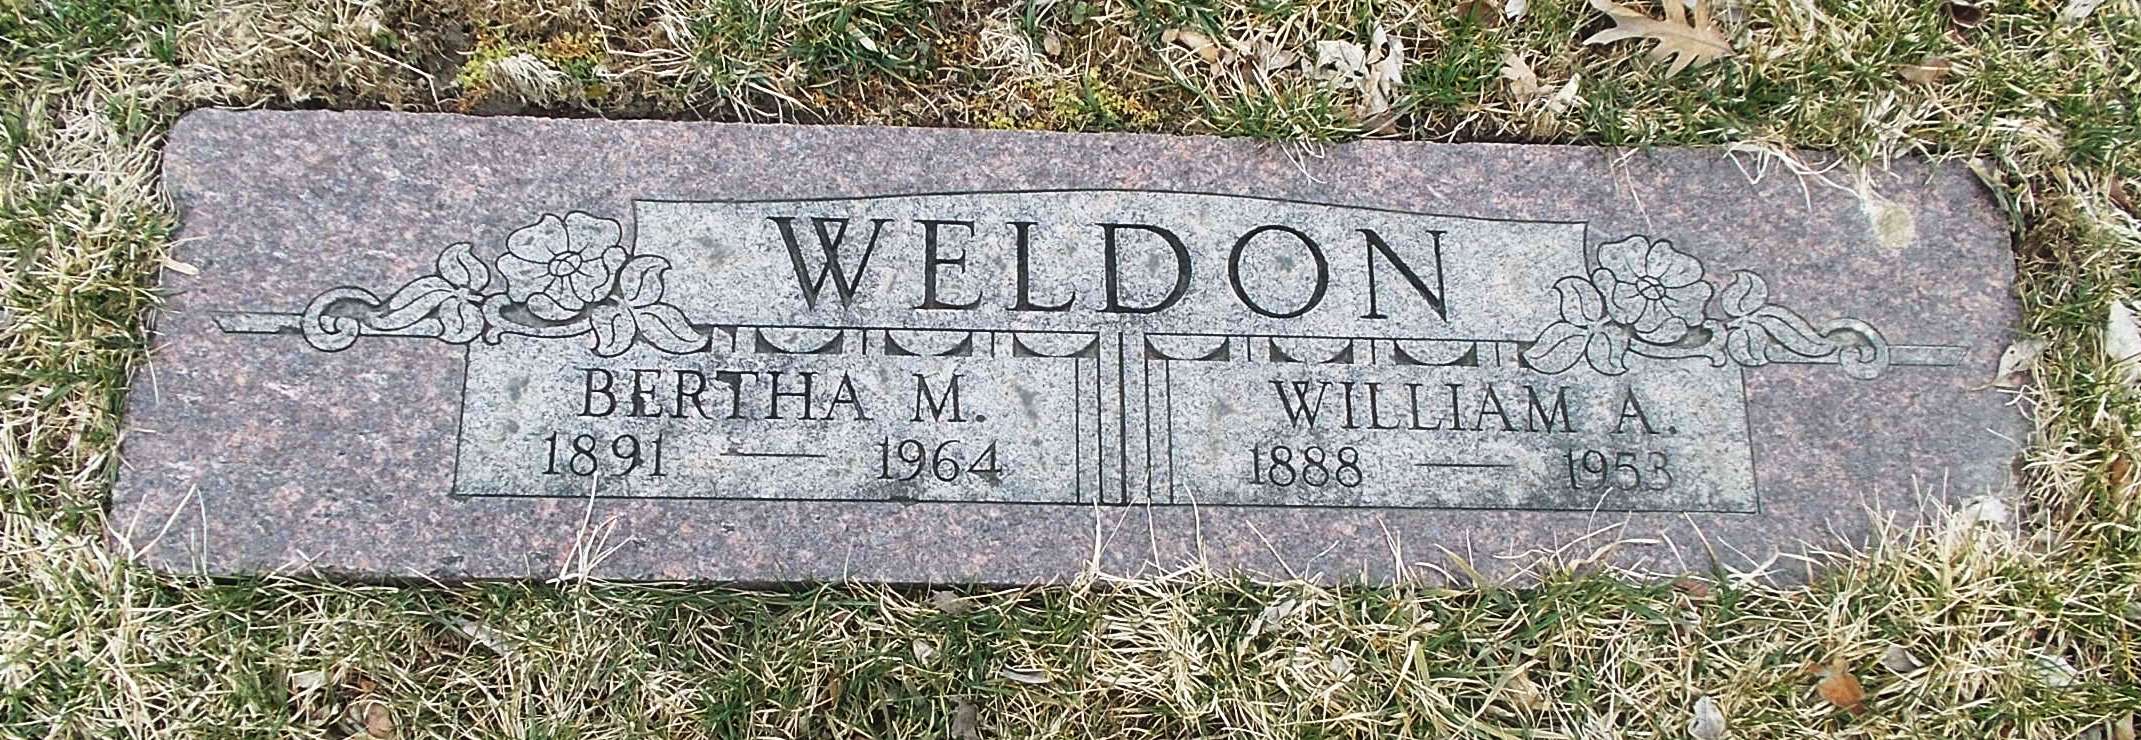 Bertha M Weldon